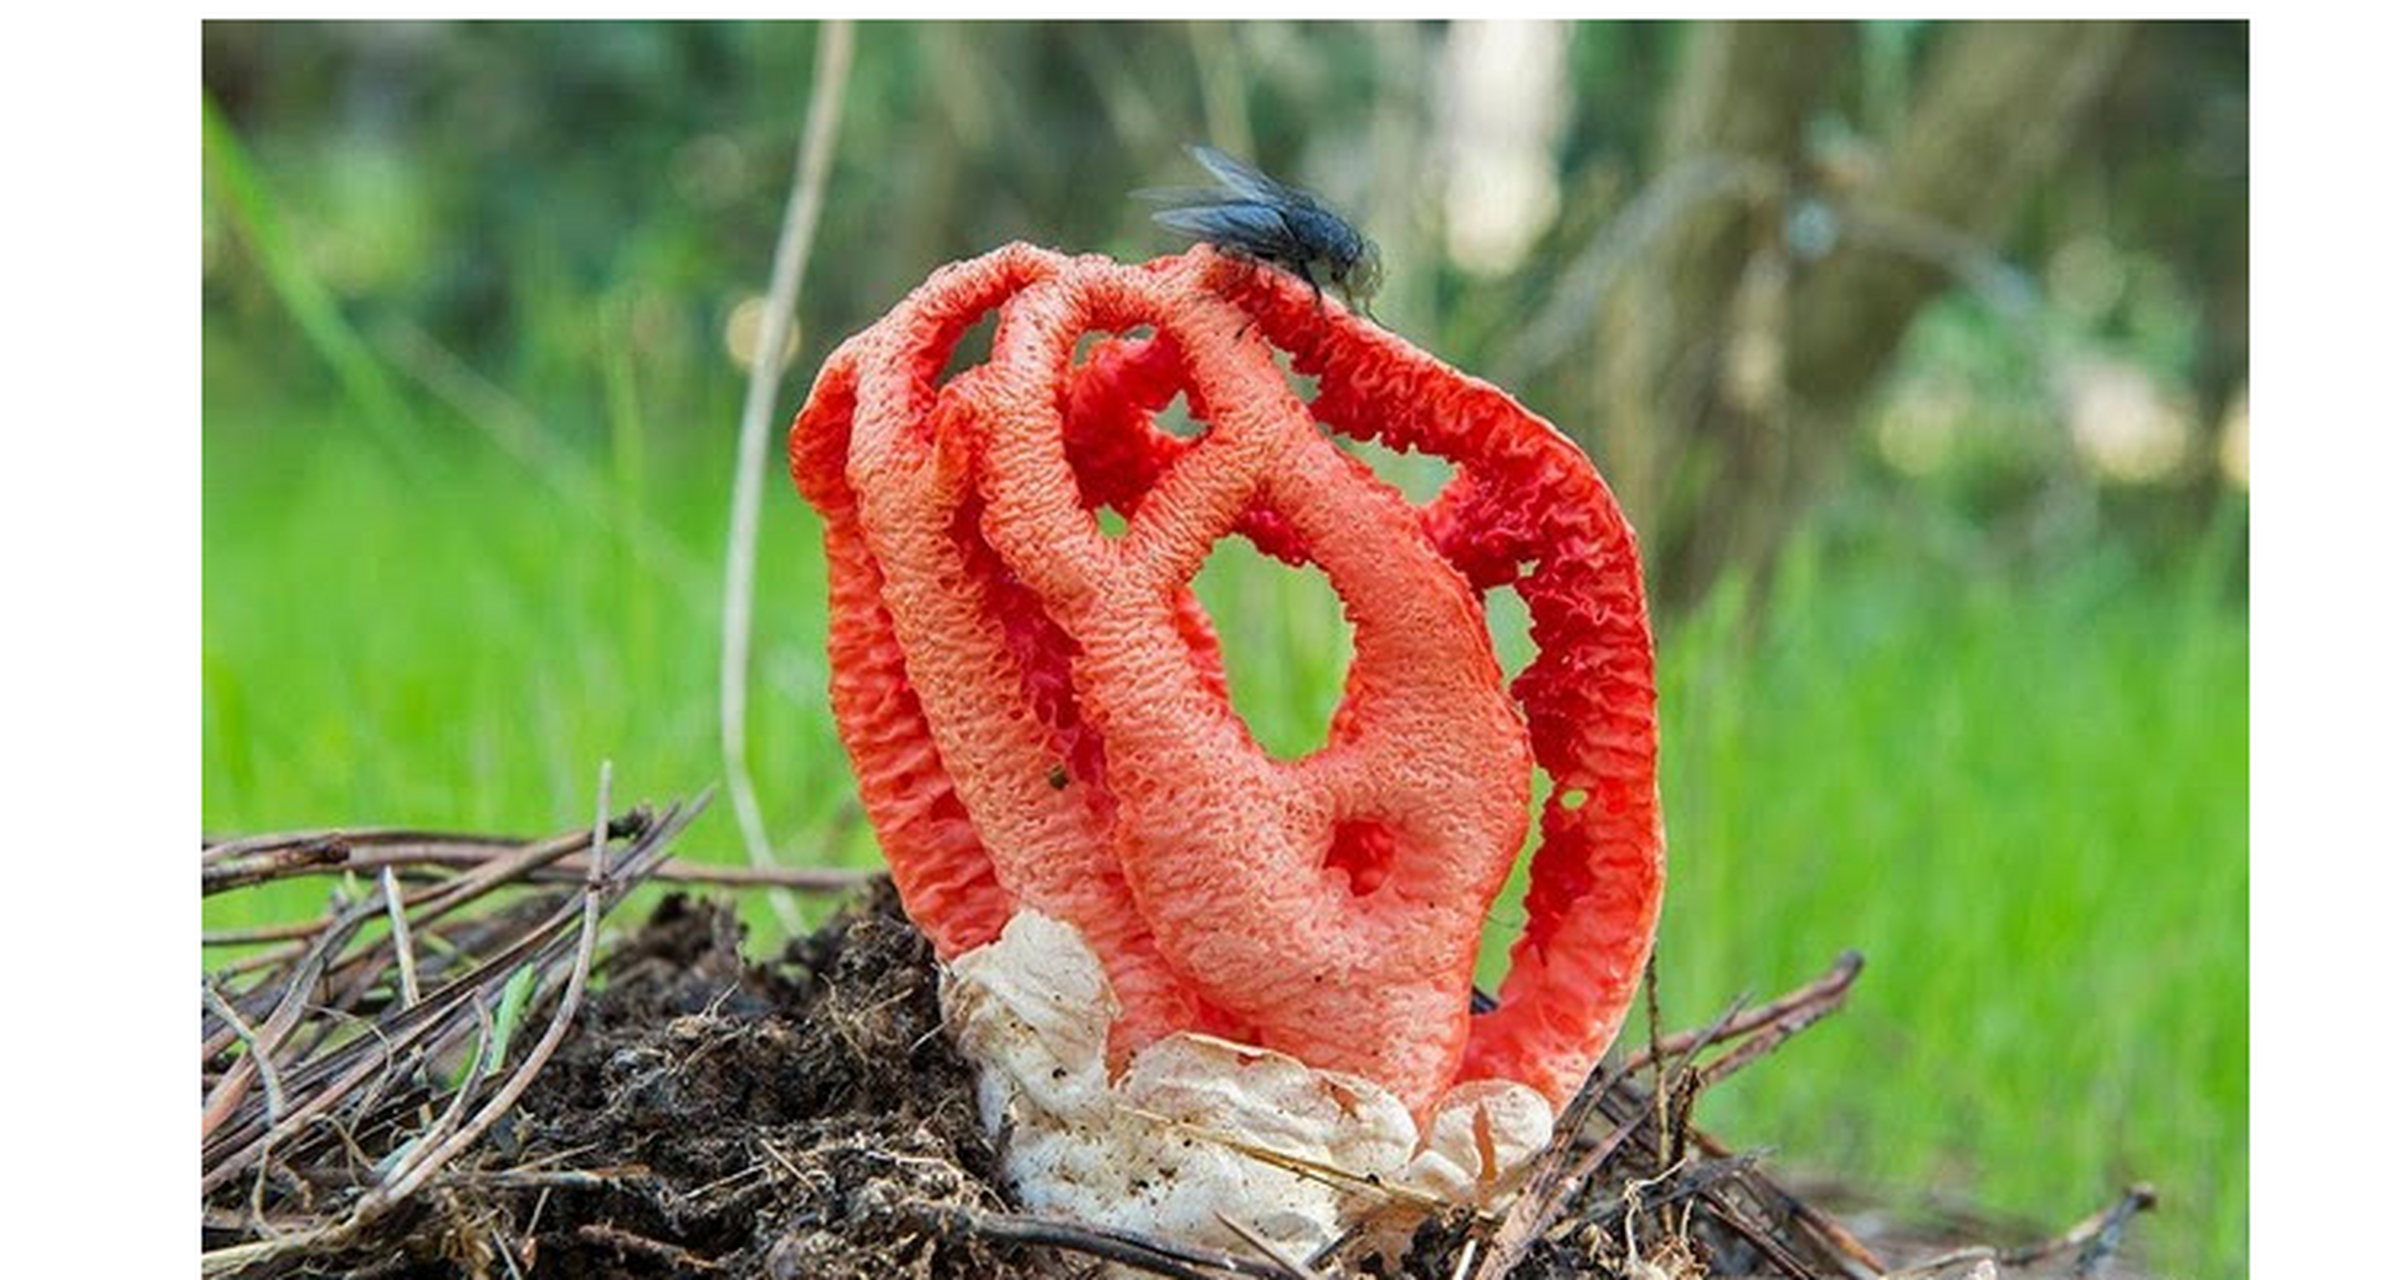 世界上最奇特的植物 红笼头菌,最不像植物的花 红笼头菌为鬼笔科的一